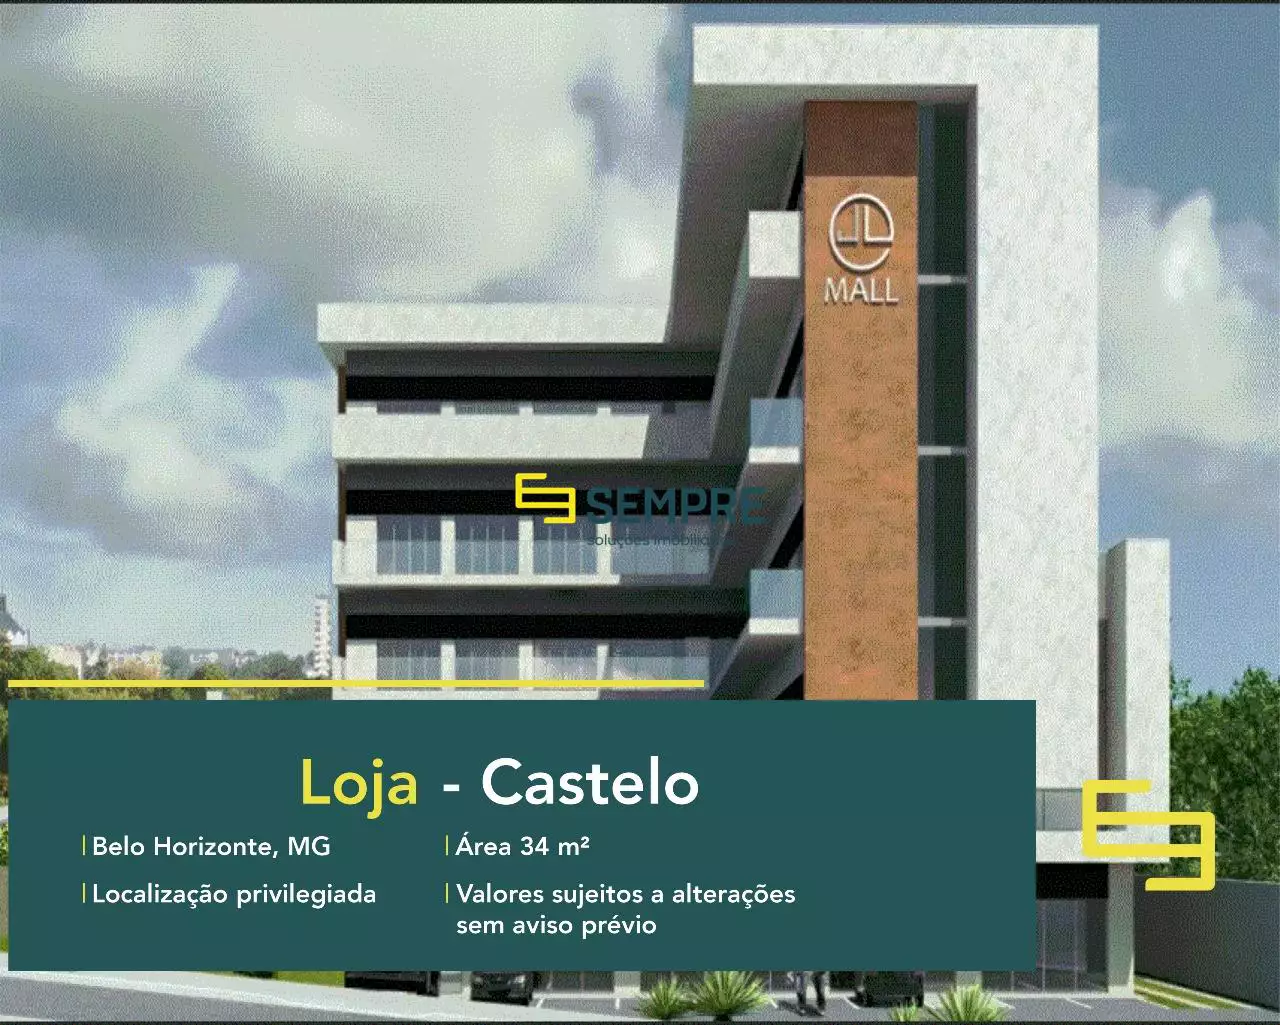 Loja à venda no Castelo em Belo Horizonte Av Miguel Perrela, em excelente localização. O estabelecimento comercial conta com área de 34,55m².